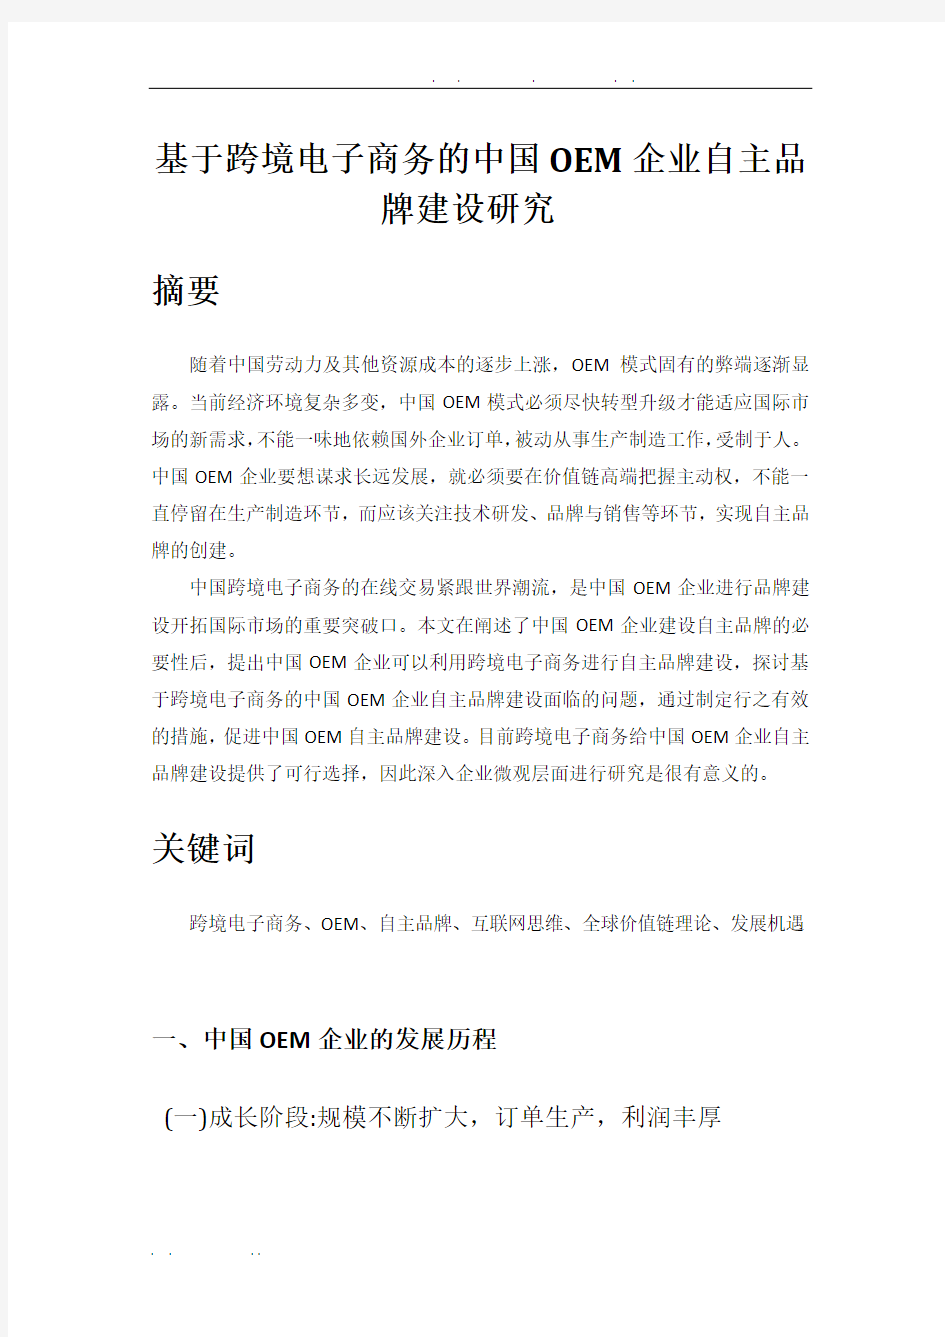 基于跨境电子商务的中国OEM企业自主品牌建设研究(韦晓媚)